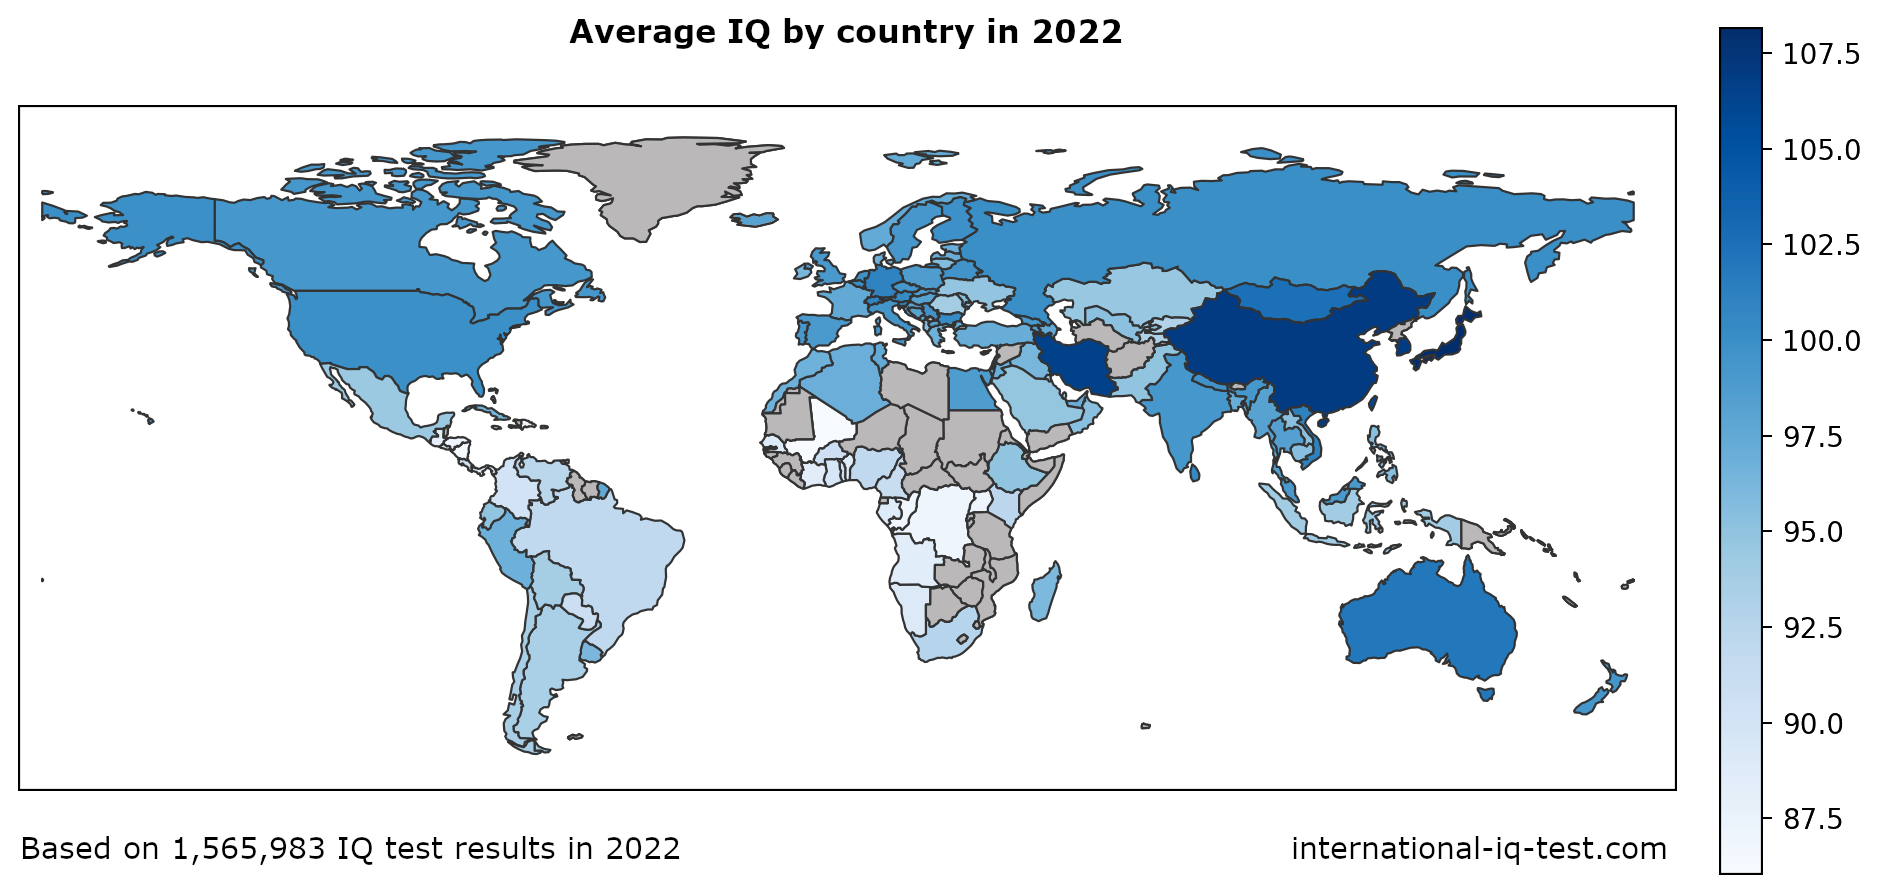 가장 밝은 색부터 가장 어두운 색까지 파란색 음영을 사용하여 2022년 국가별 평균 IQ를 보여주는 세계 지도